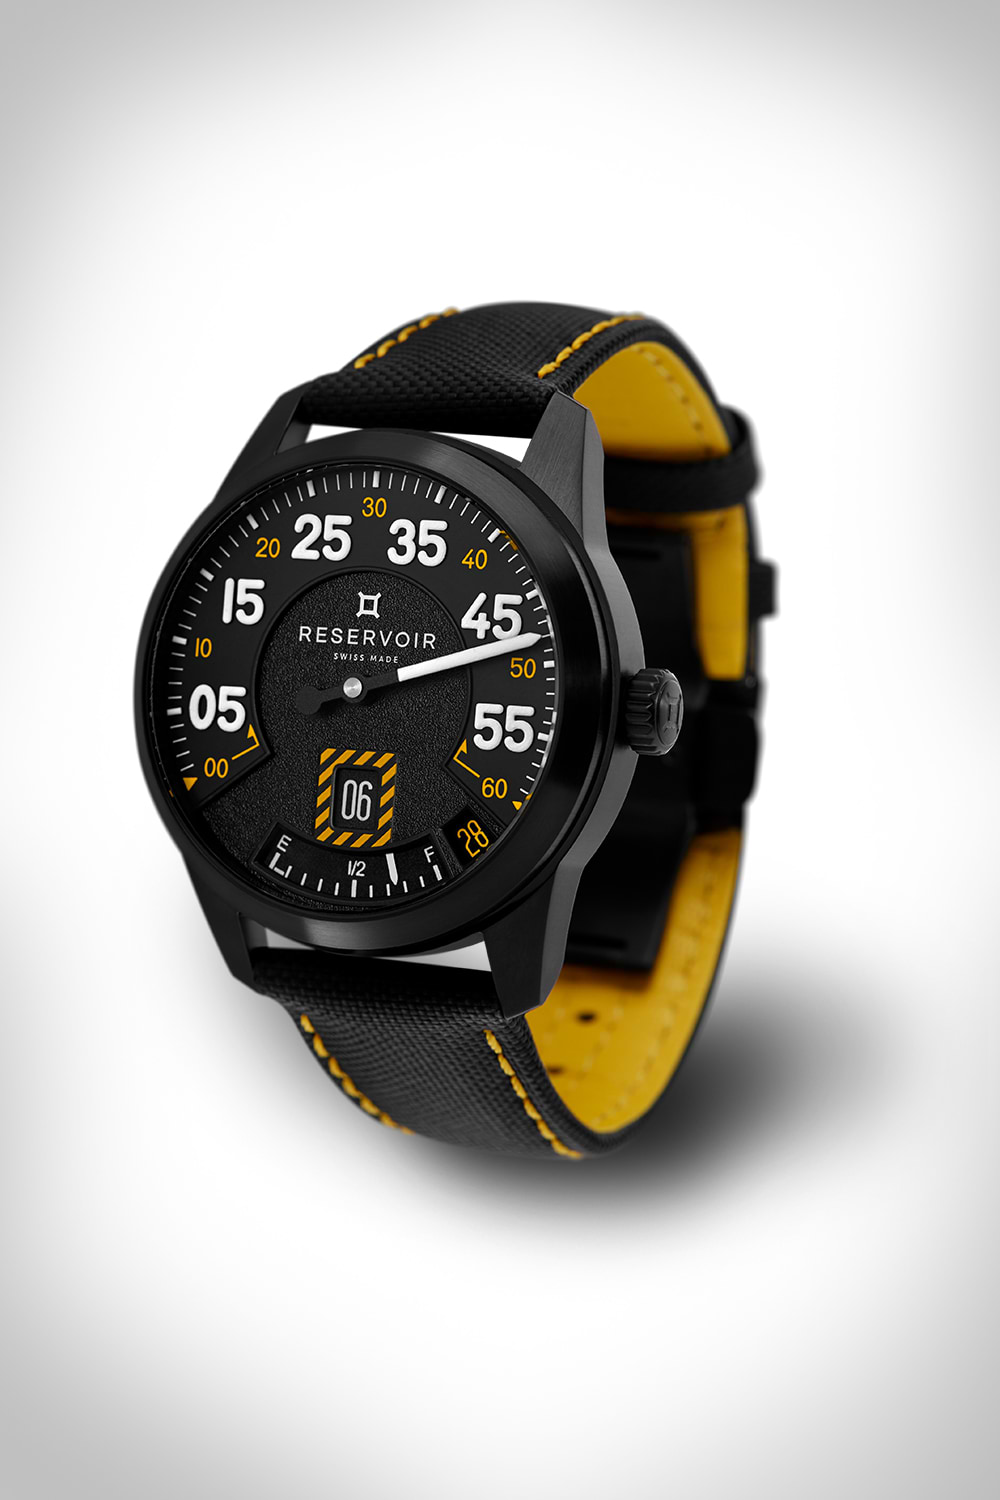 Montre-bracelet noire avec chiffres en gras, affichage de la date, accents jaunes et bracelet noir avec surpiqûres jaunes.